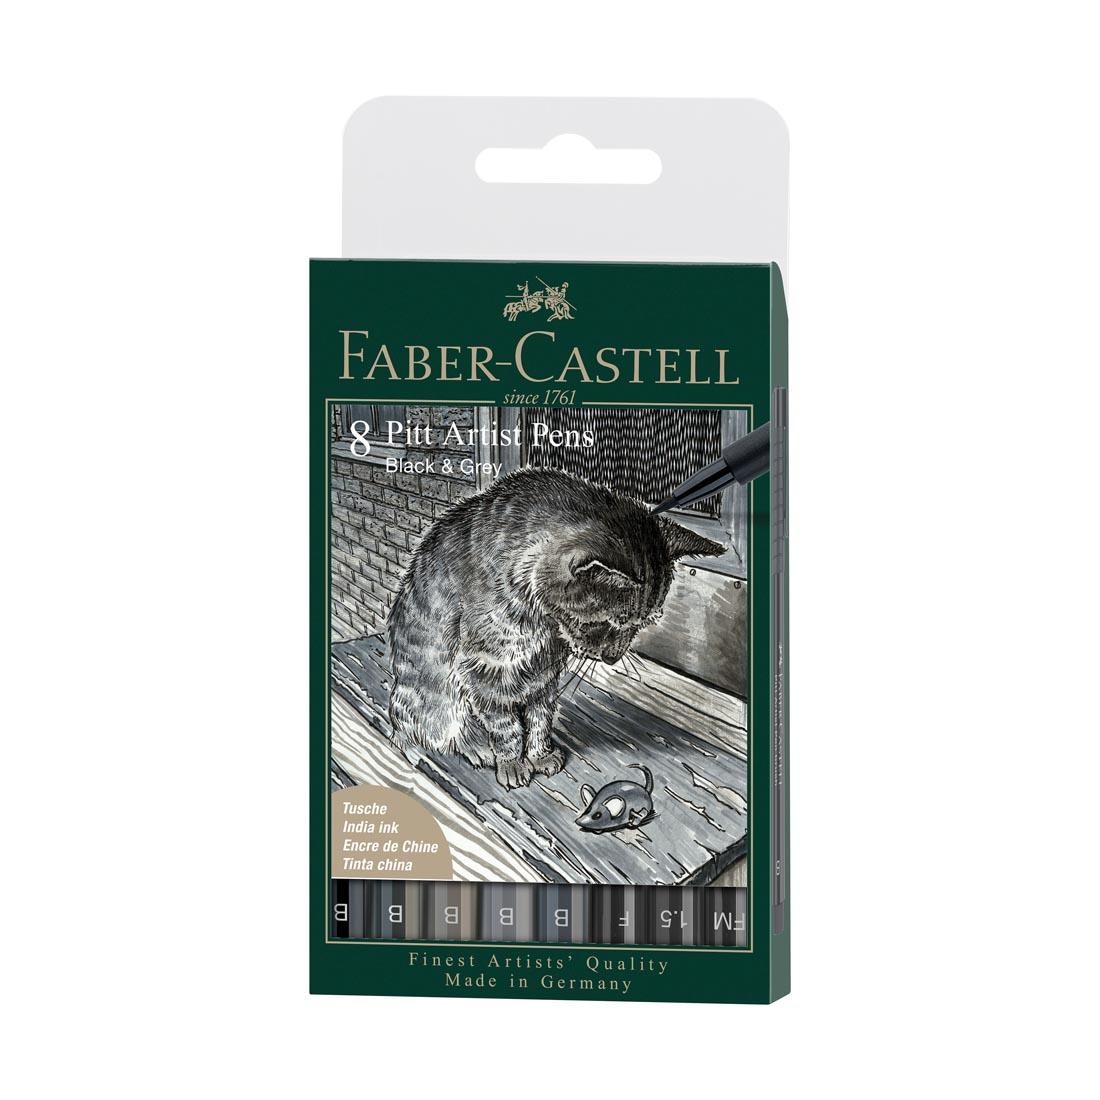 Faber-Castell PITT Artist Pen 8-Piece Black & Gray Set